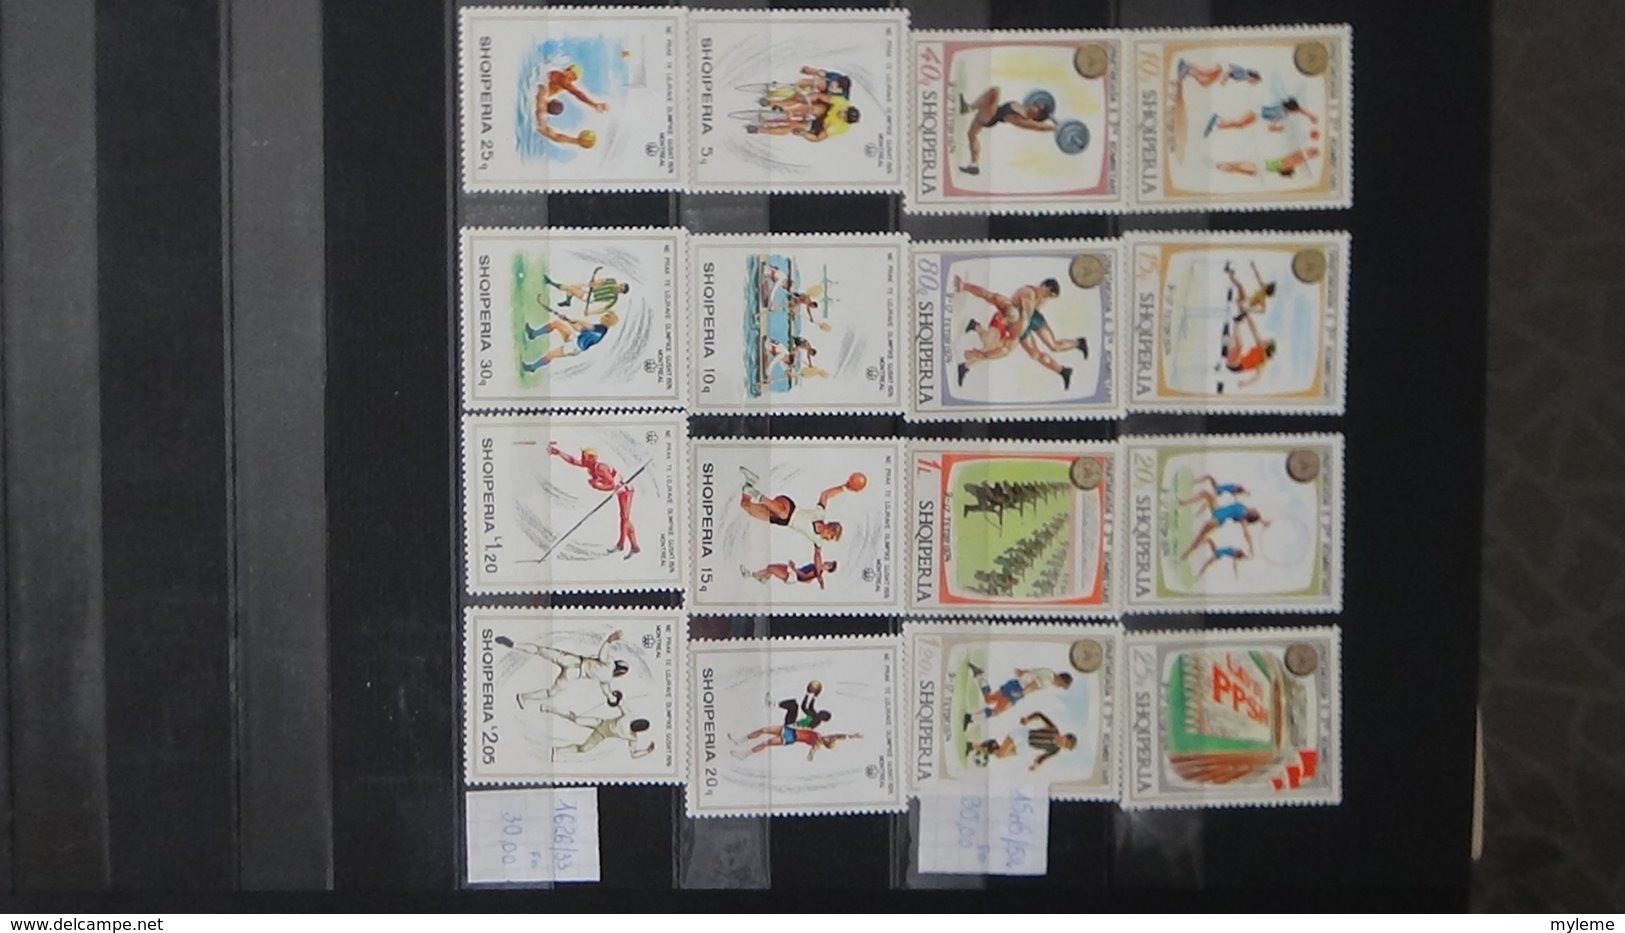 Belle thématique en timbres et blocs ** sur le sport . A saisir !!!